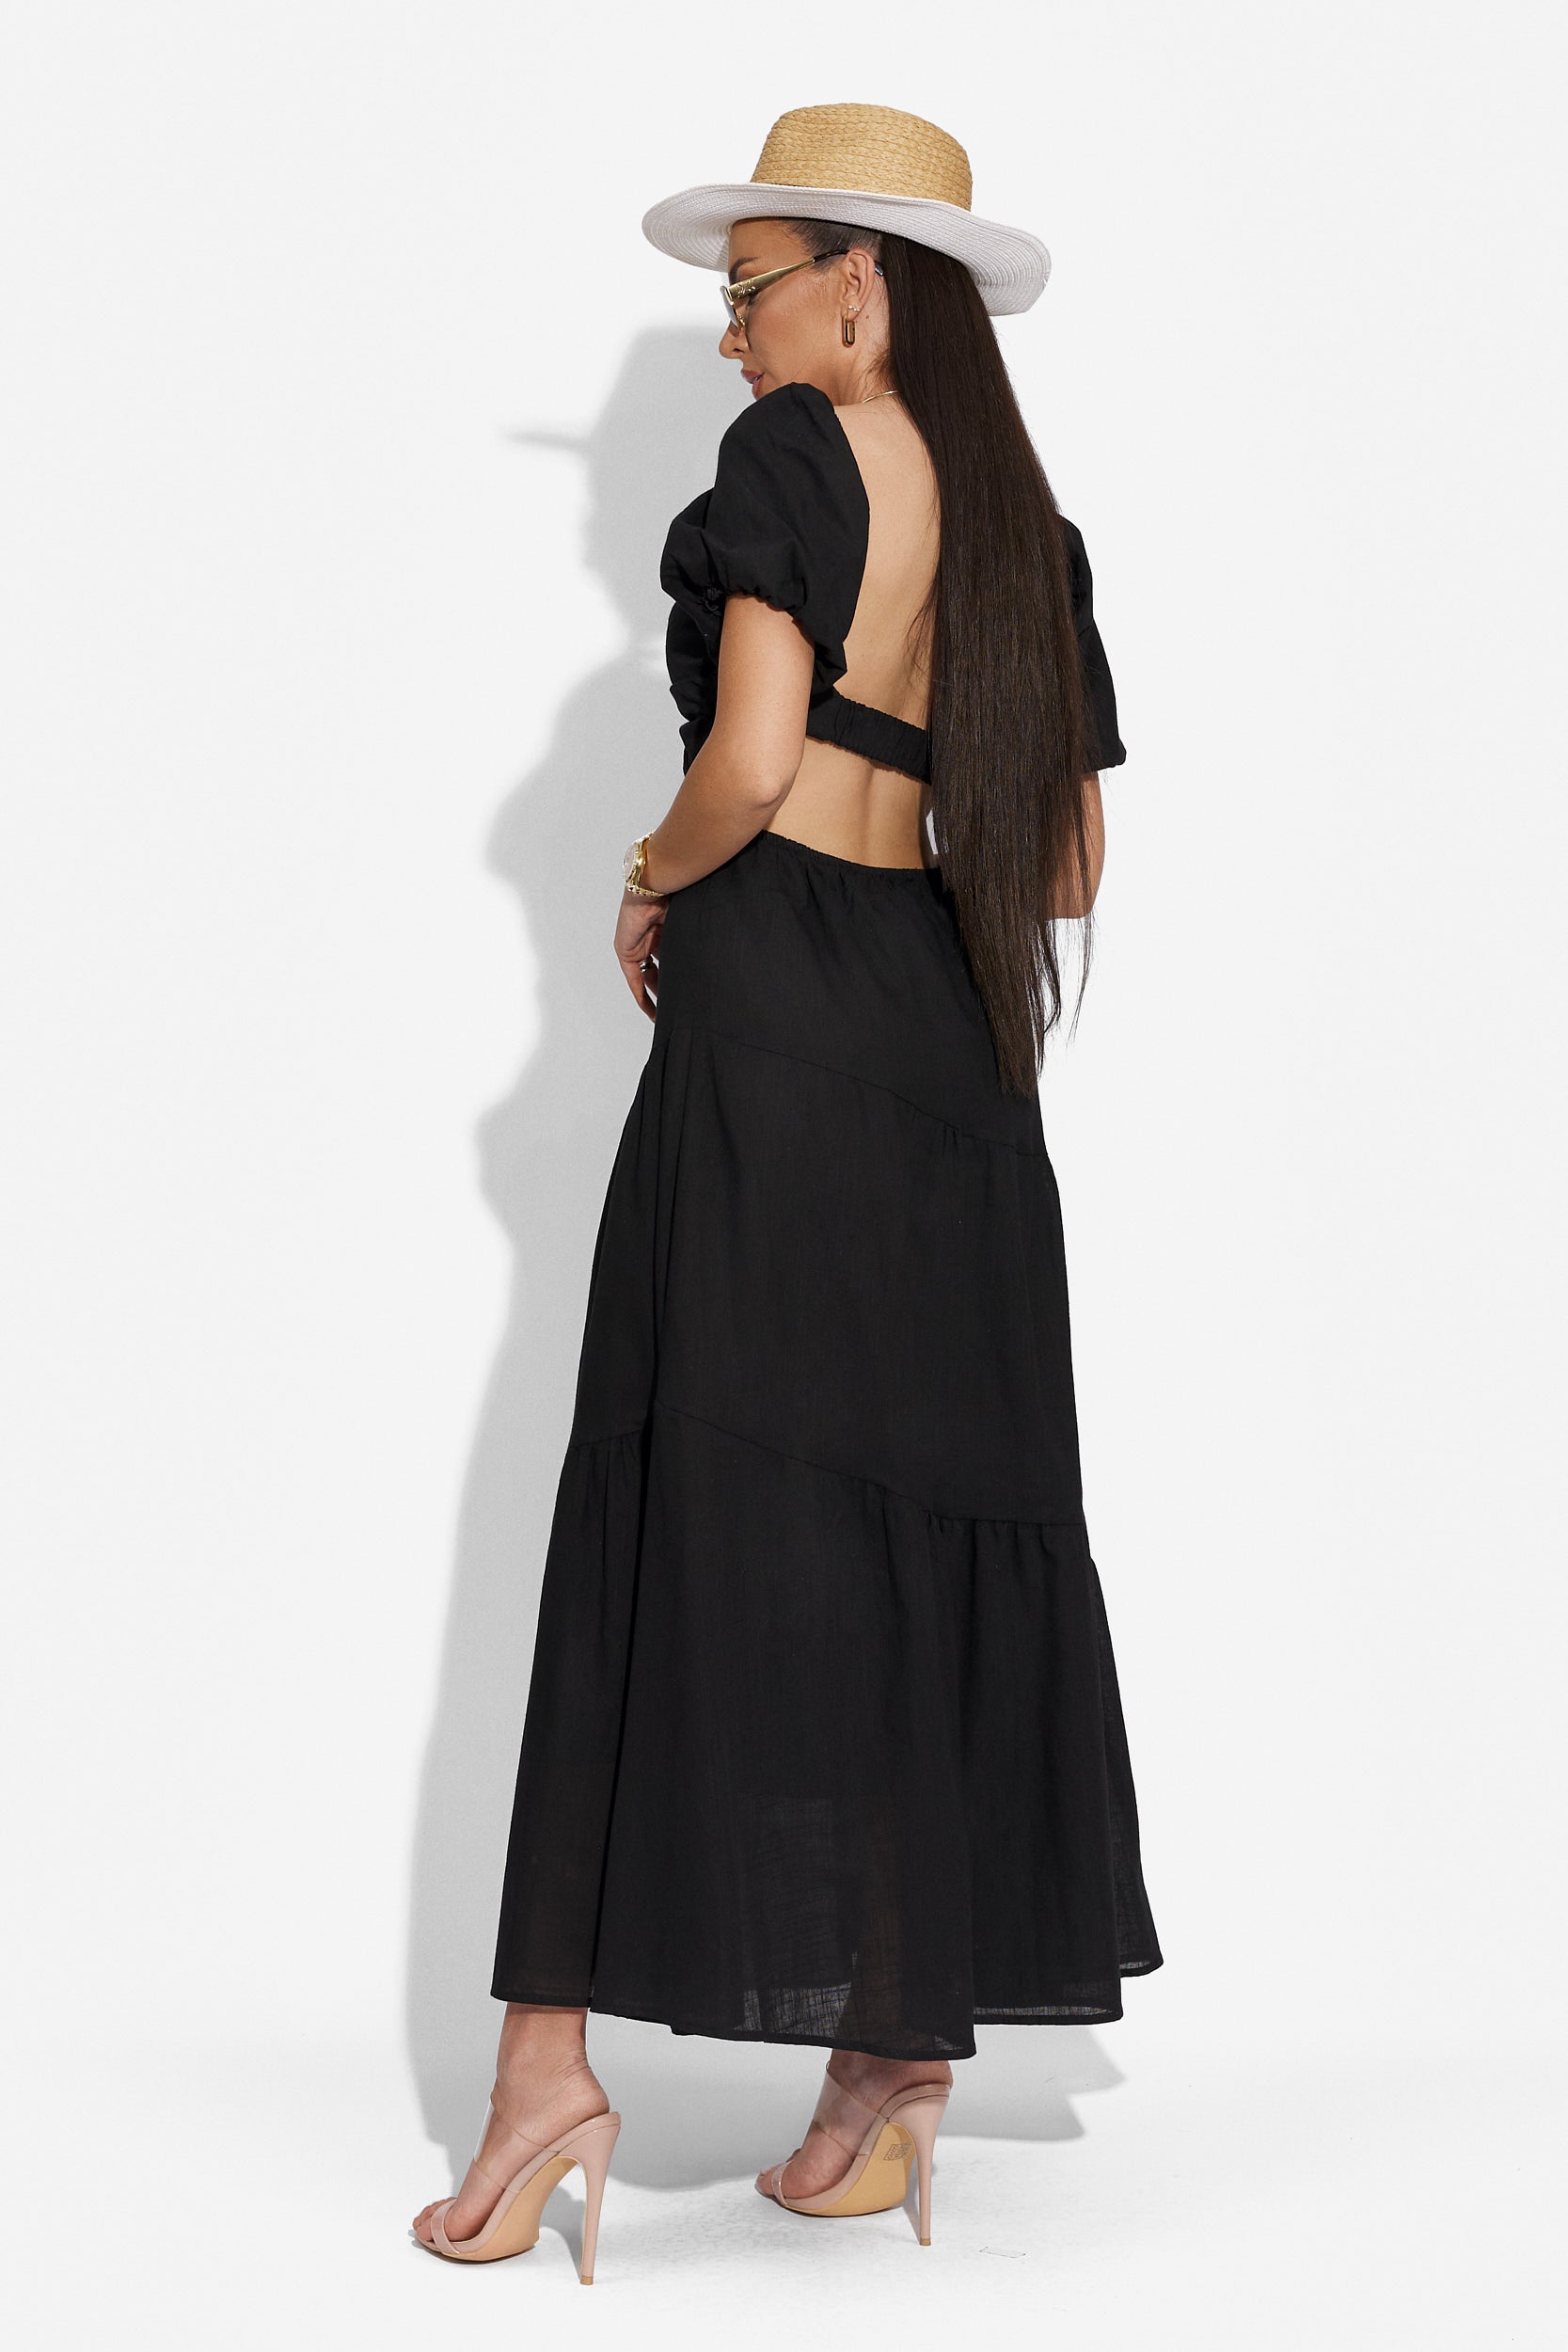 Fekete hosszú női ruha Mosysca Bogas